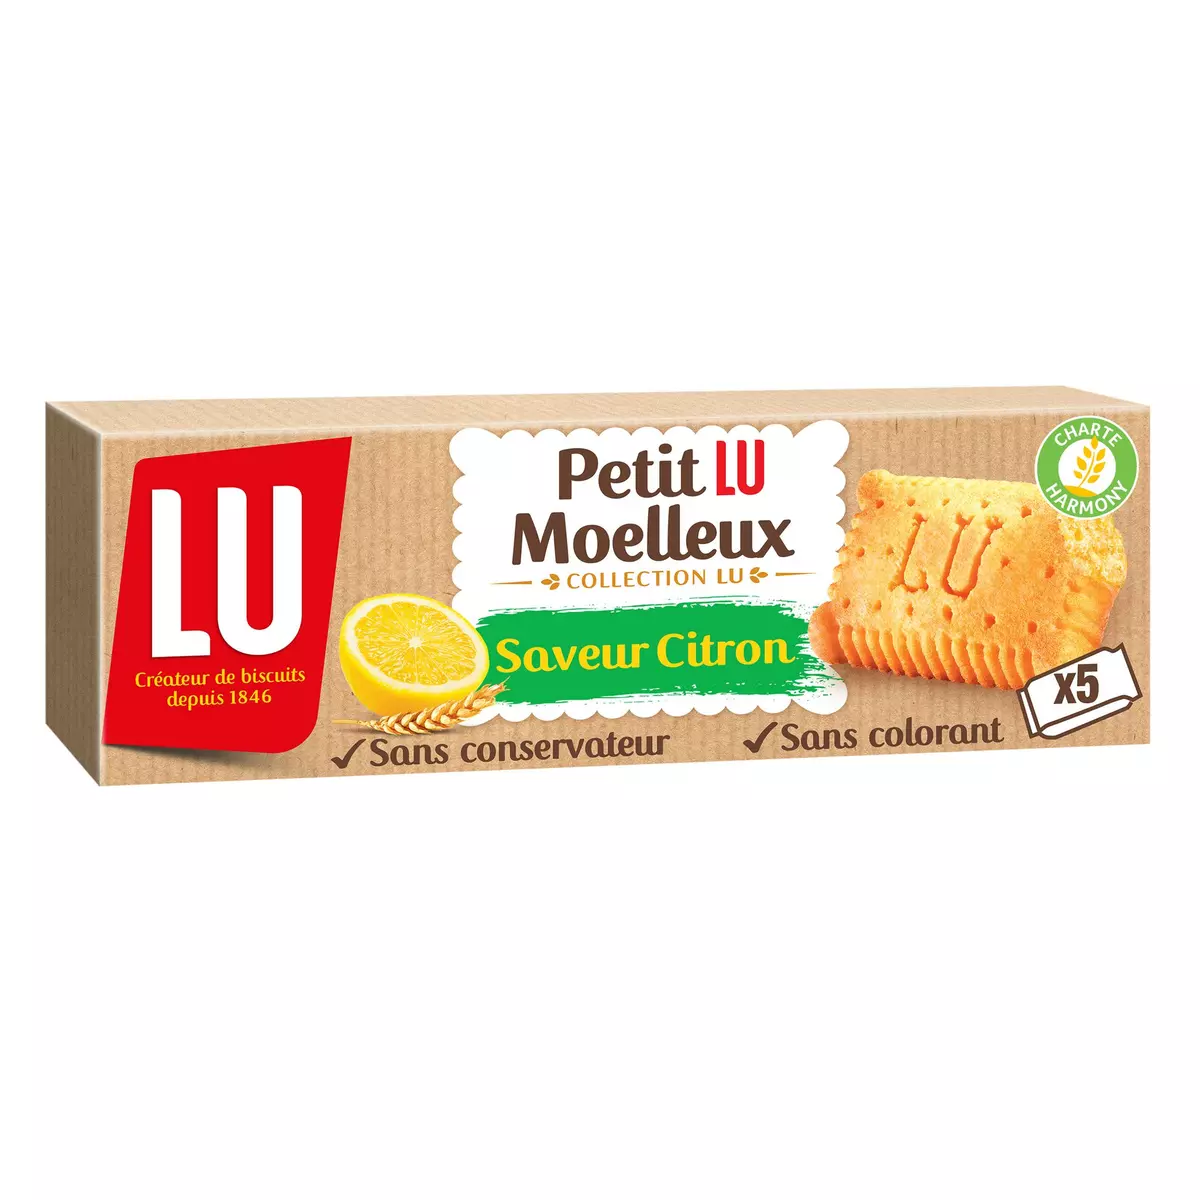 PETIT LU Moelleux gâteaux saveur citron sans colorant sachets individuels 5 gâteaux 140g